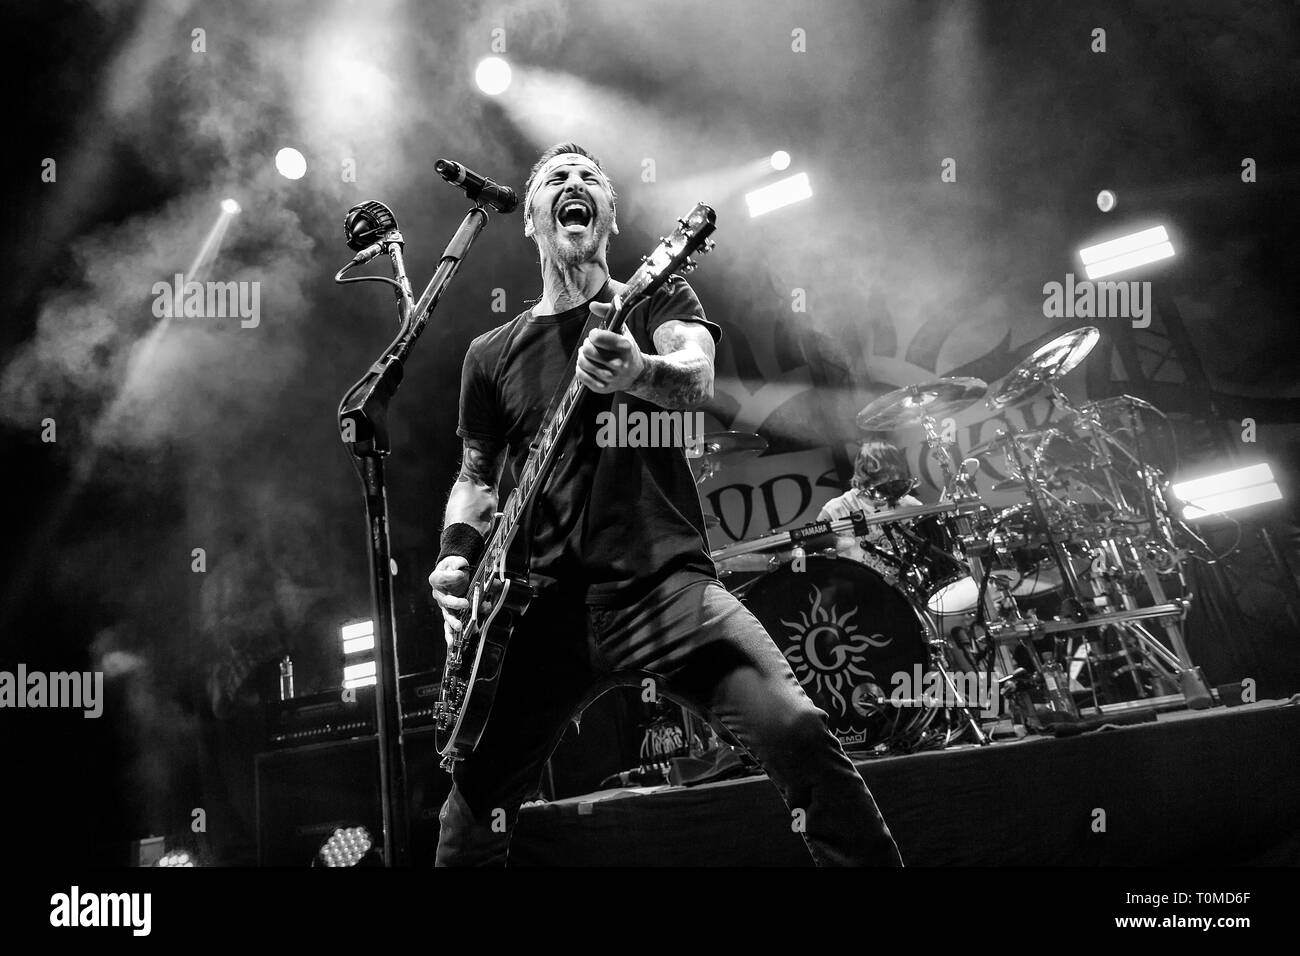 Norvège, Oslo - le 17 mars 2019. Le groupe de rock Godsmack effectue un concert live à Oslo Spektrum d'Oslo. Ici chanteur et guitariste Sully Erna est vu sur scène. (Photo crédit : Gonzales Photo - Terje Dokken). Banque D'Images